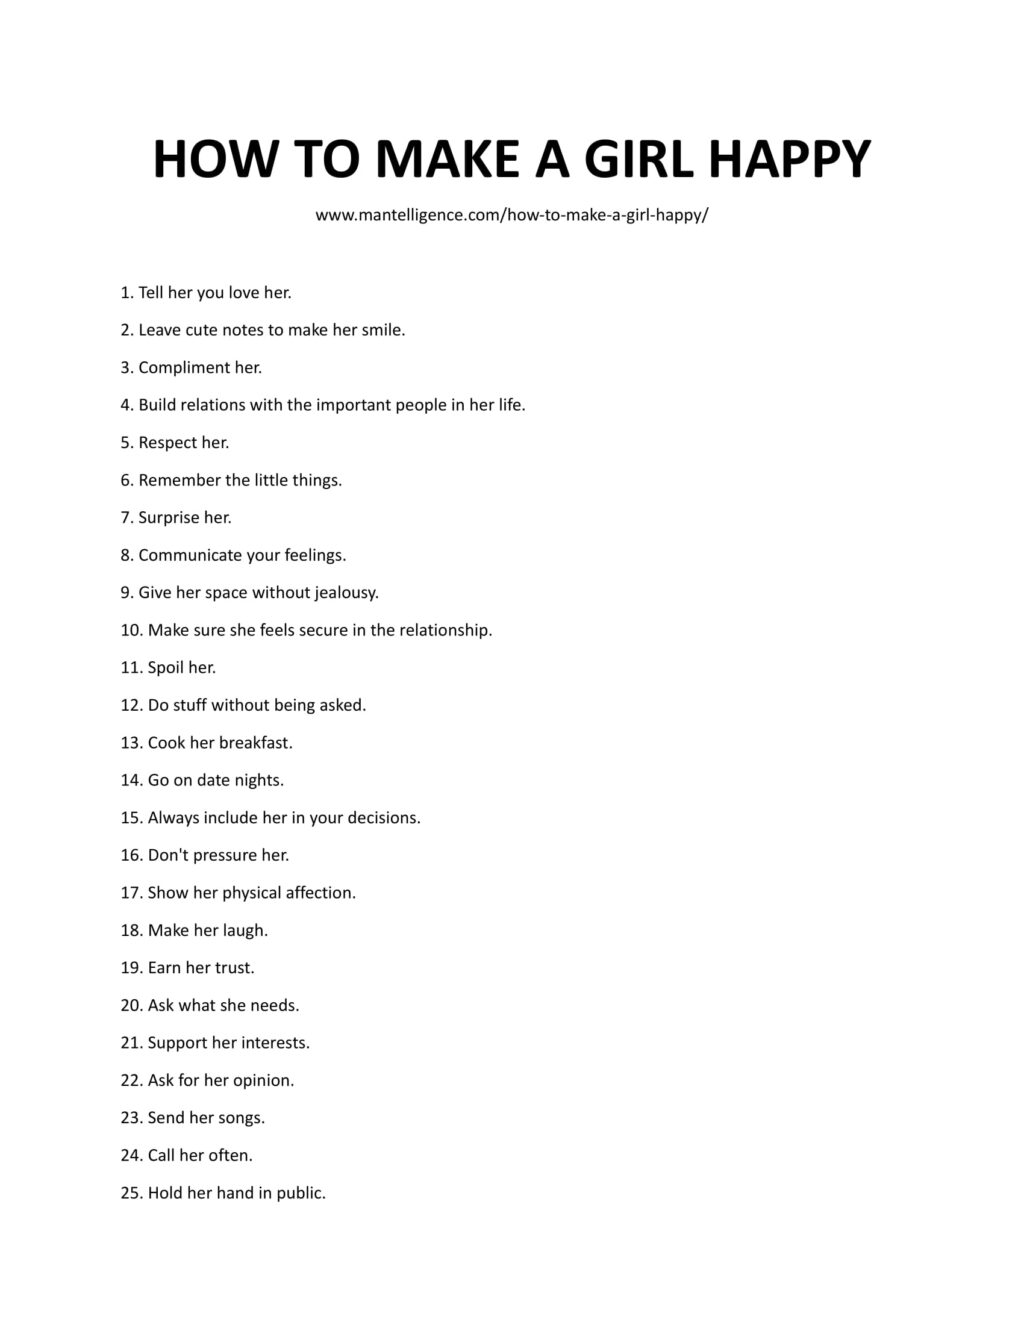 Cómo hacer feliz a una chica